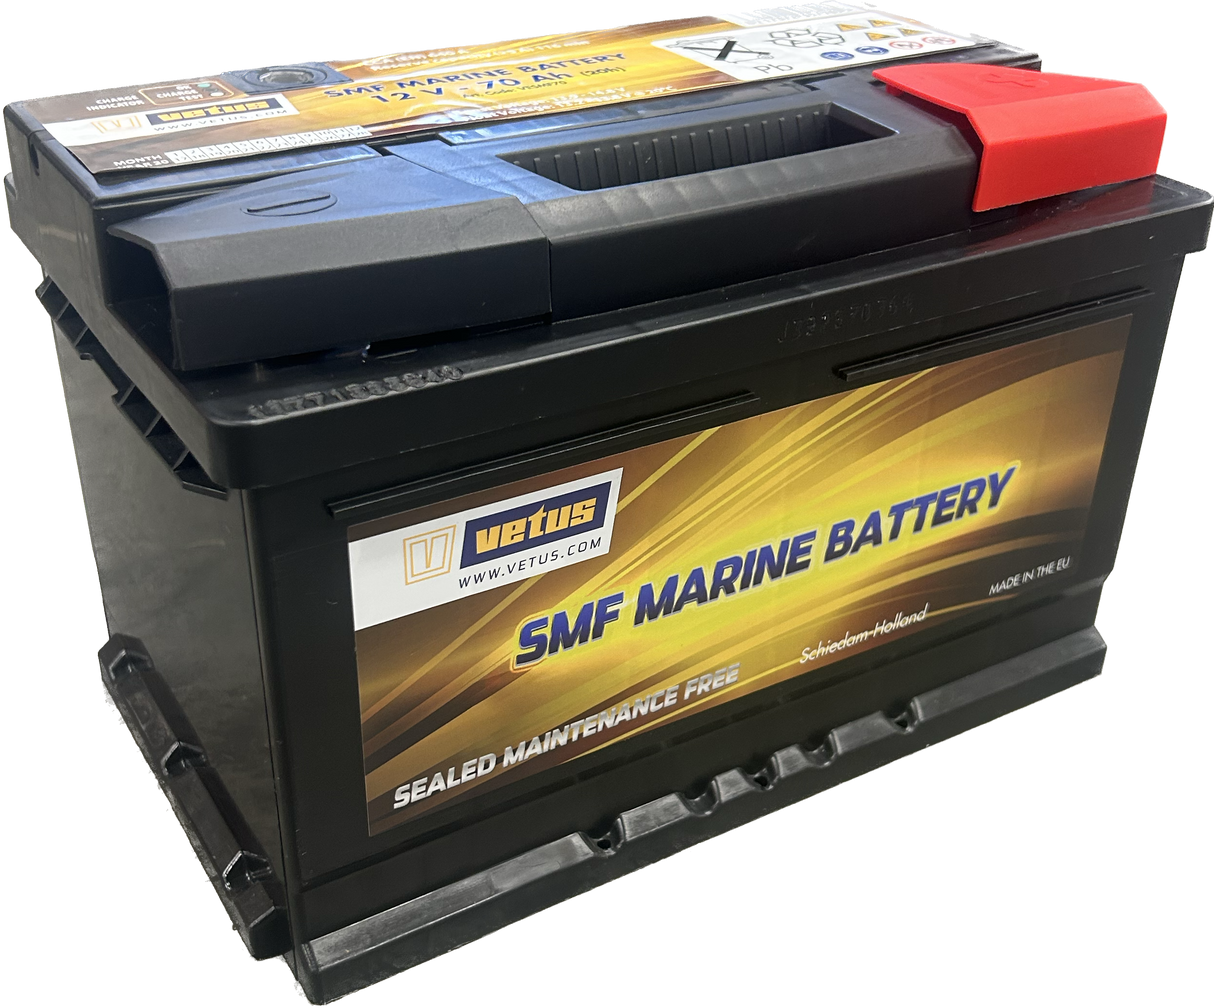 Batteri SMF typ VESMF (Underhållsfria förseglade)